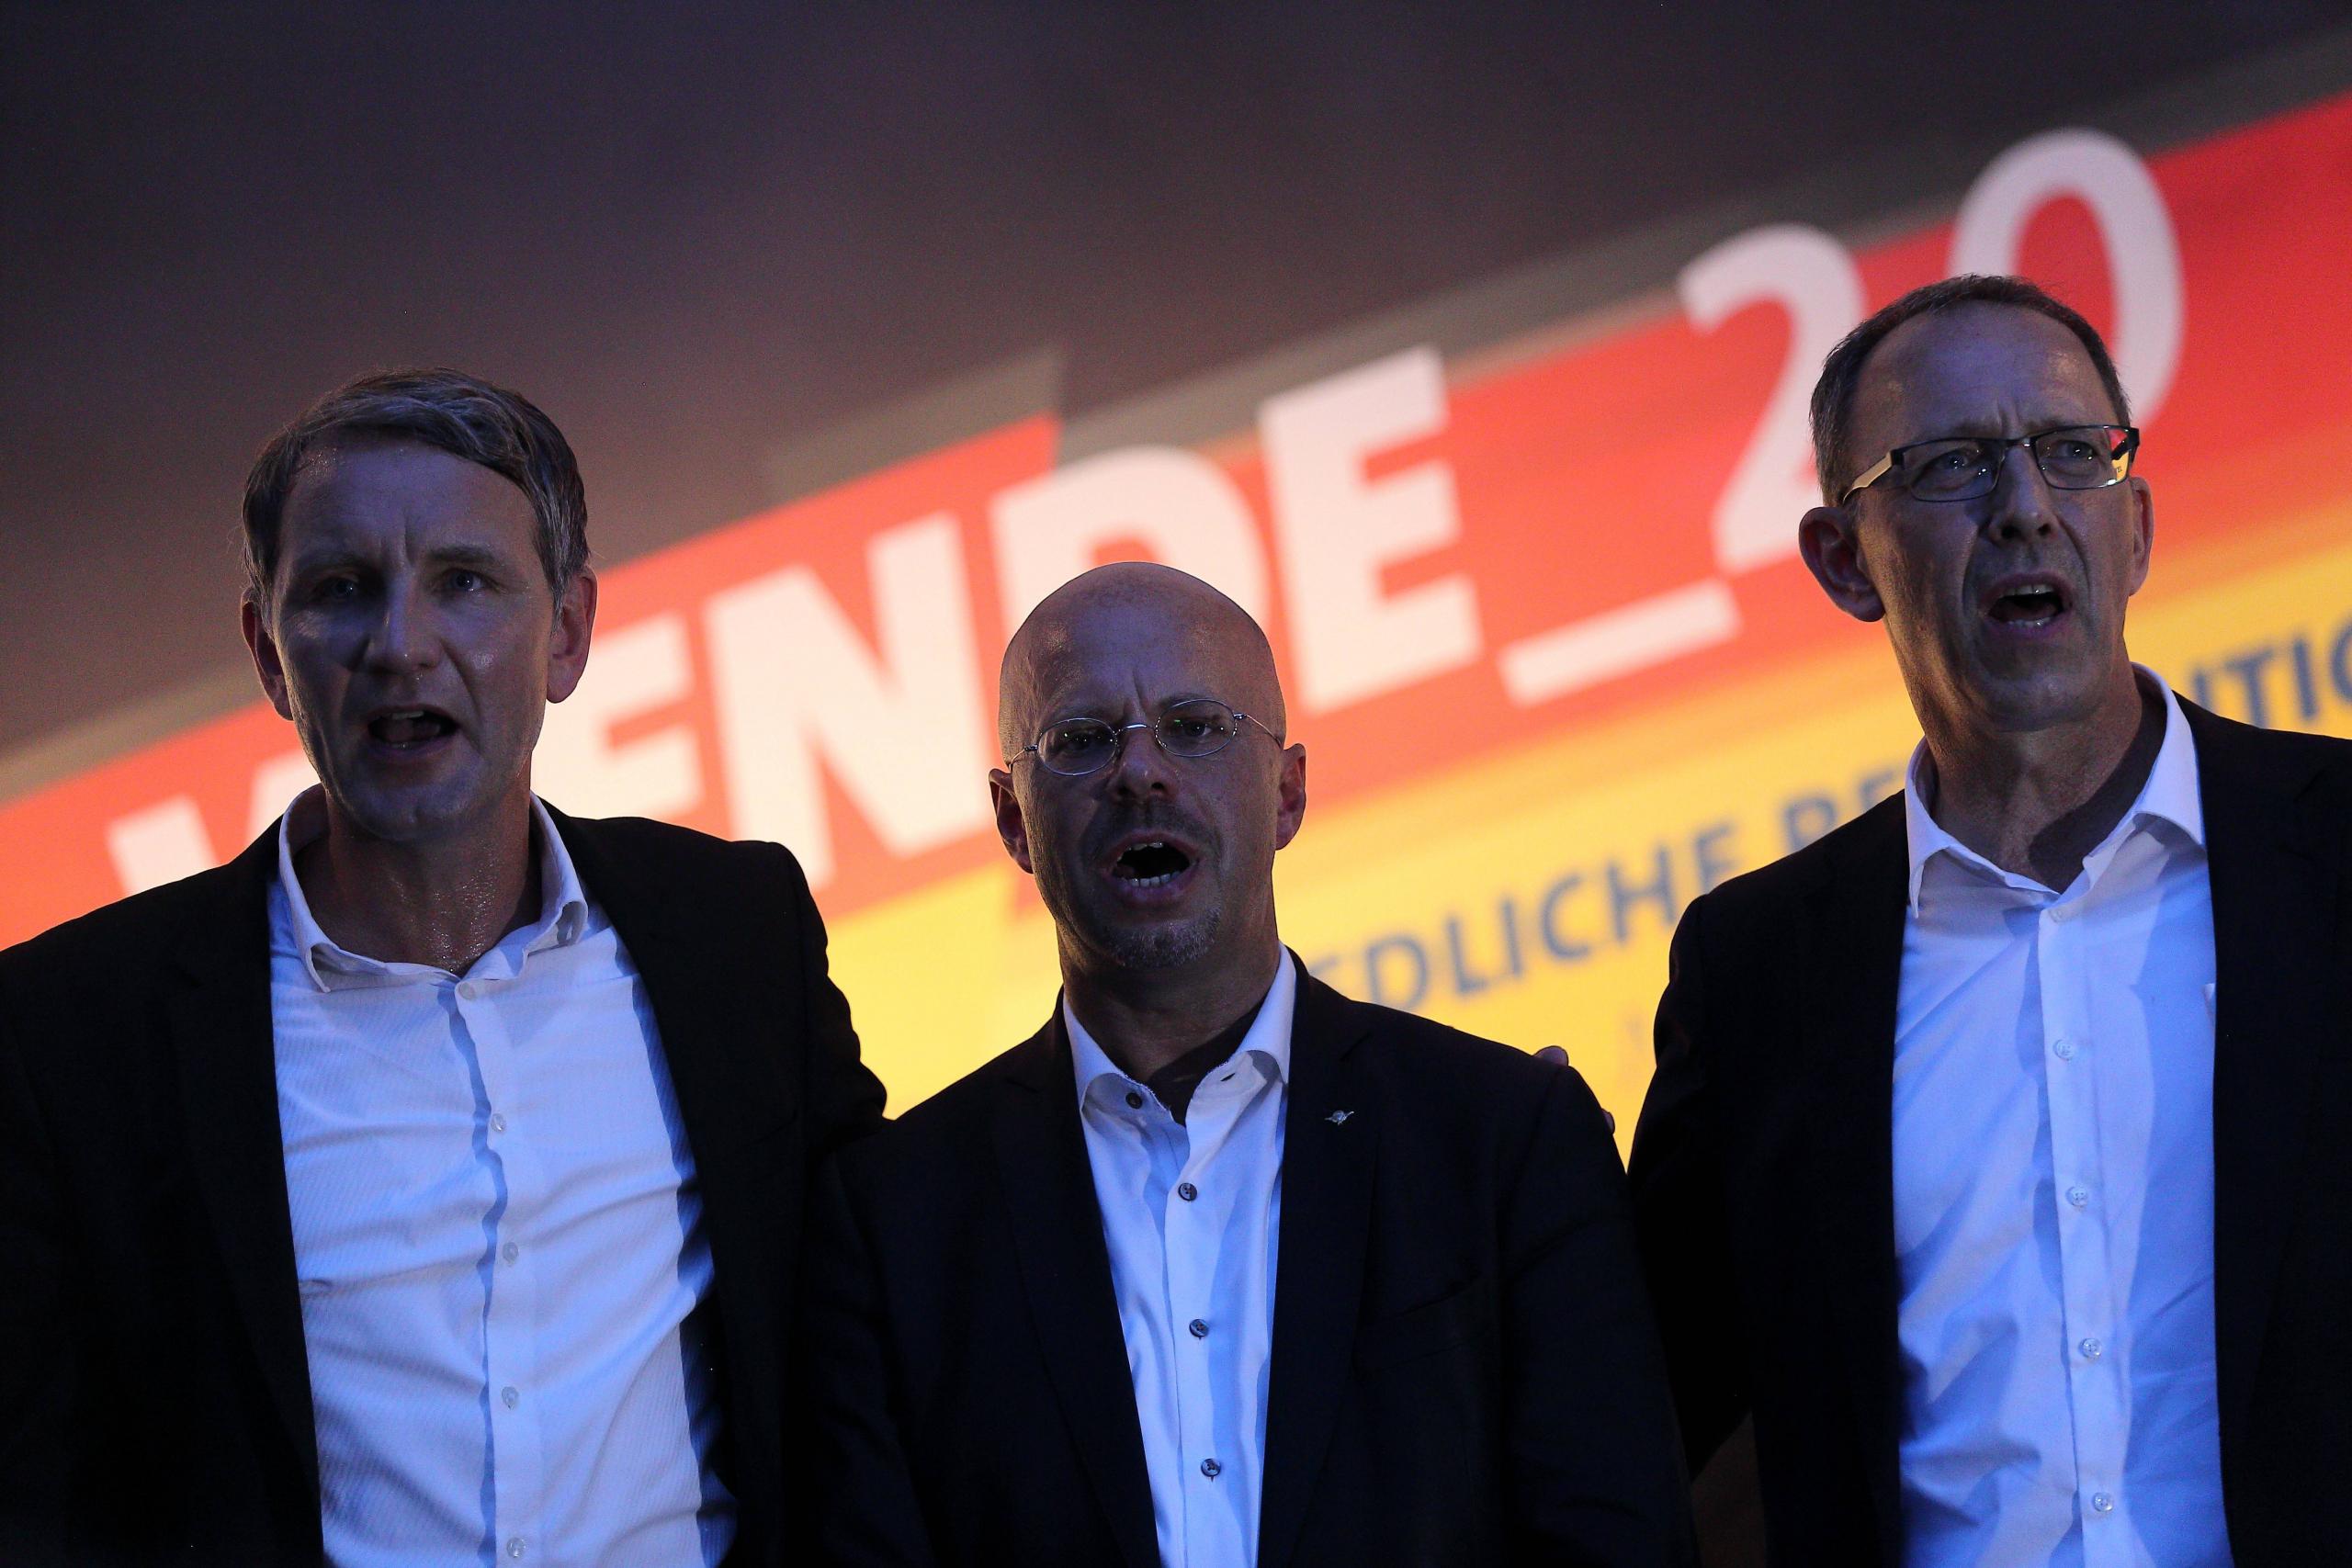 Björn Höcke aus Thüringen, Andreas Kalbitz vor seinem Parteiausschluss aus Brandenburg und Jörg Urban aus Sachsen singen 2019 gemeinsam die Nationalhymne.